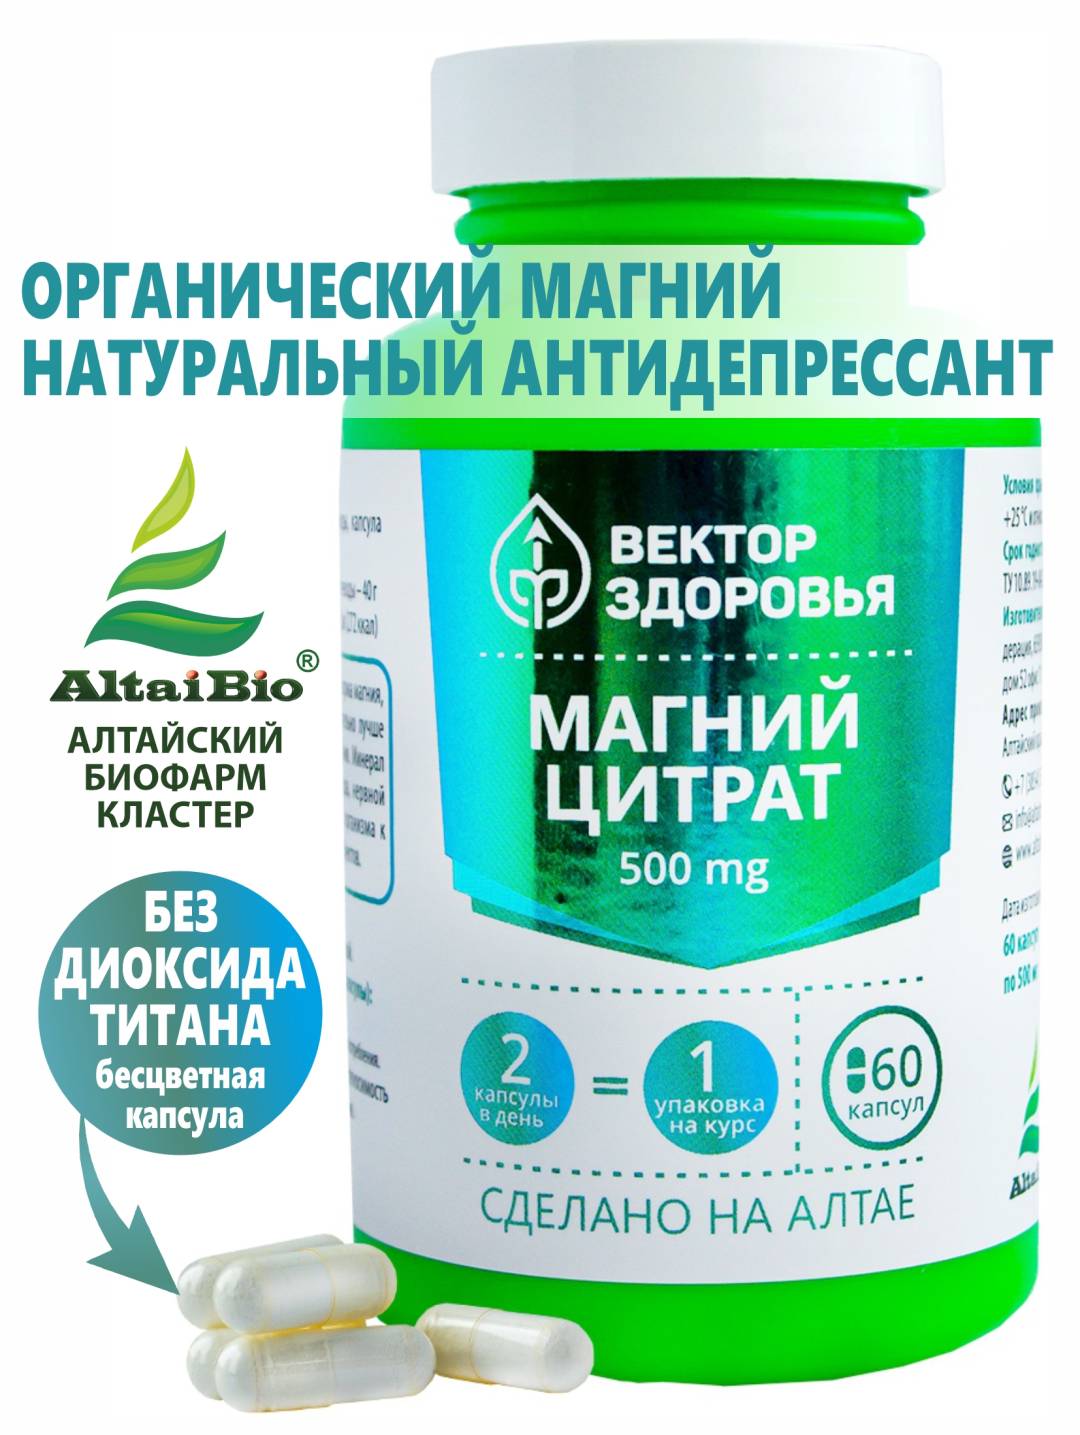 Купить онлайн Комплекс МАГНИЙ ЦИТРАТ, 60 капсул в интернет-магазине Беришка с доставкой по Хабаровску и по России недорого.